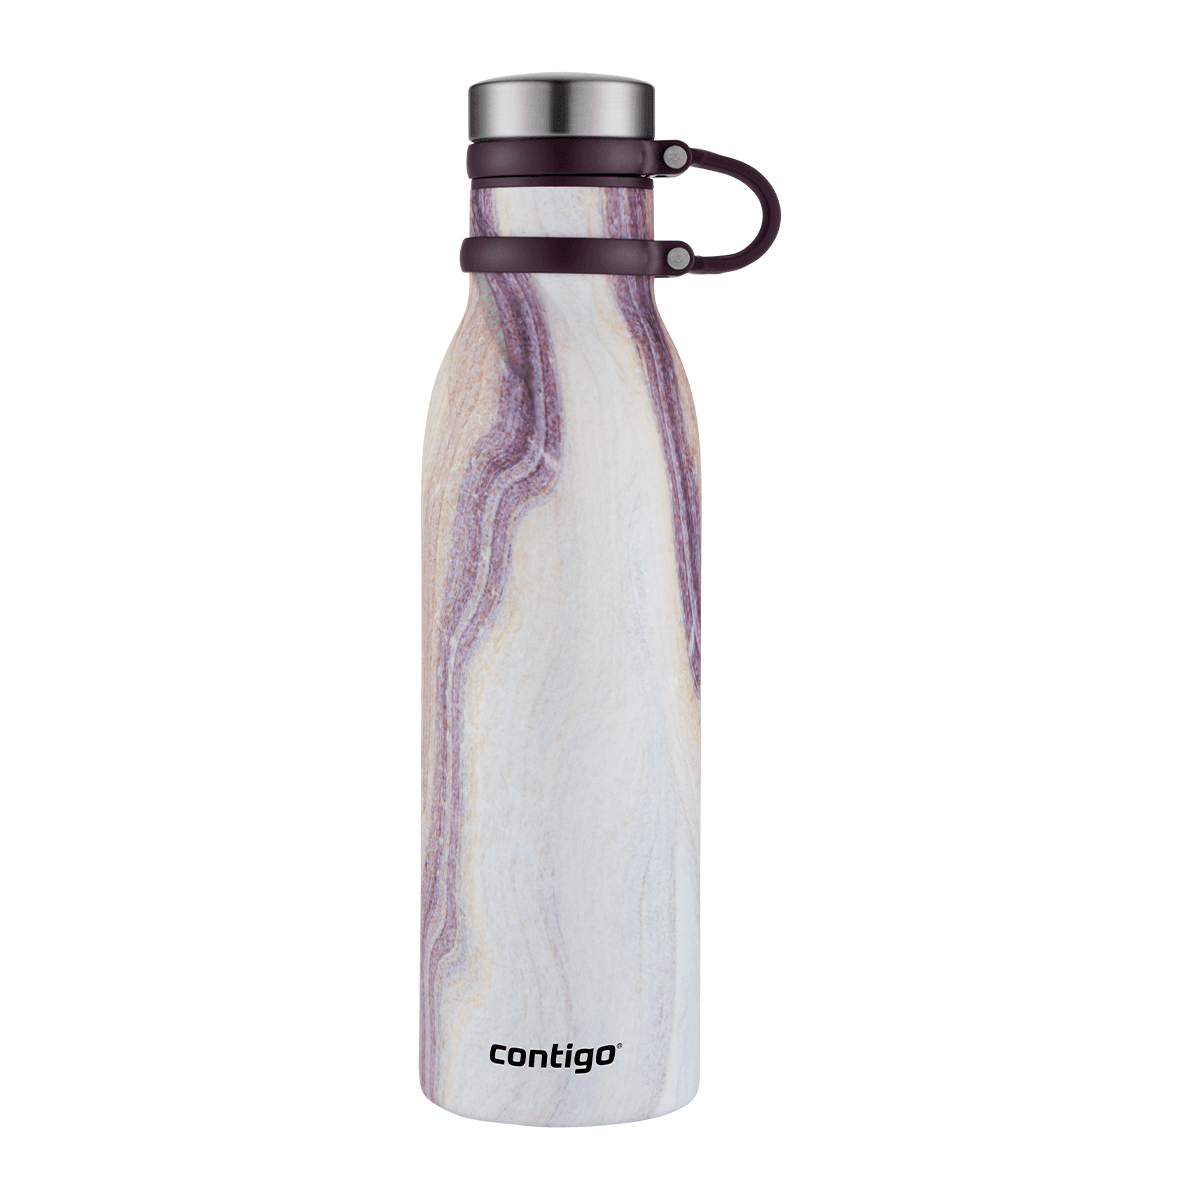 زجاجة ماء حافظة للحرارة 590 مل ستانلس ستيل رملي أبيض كونتيجو Contigo Sandstone Matterhorn Couture Vacuum Insulated Bottle